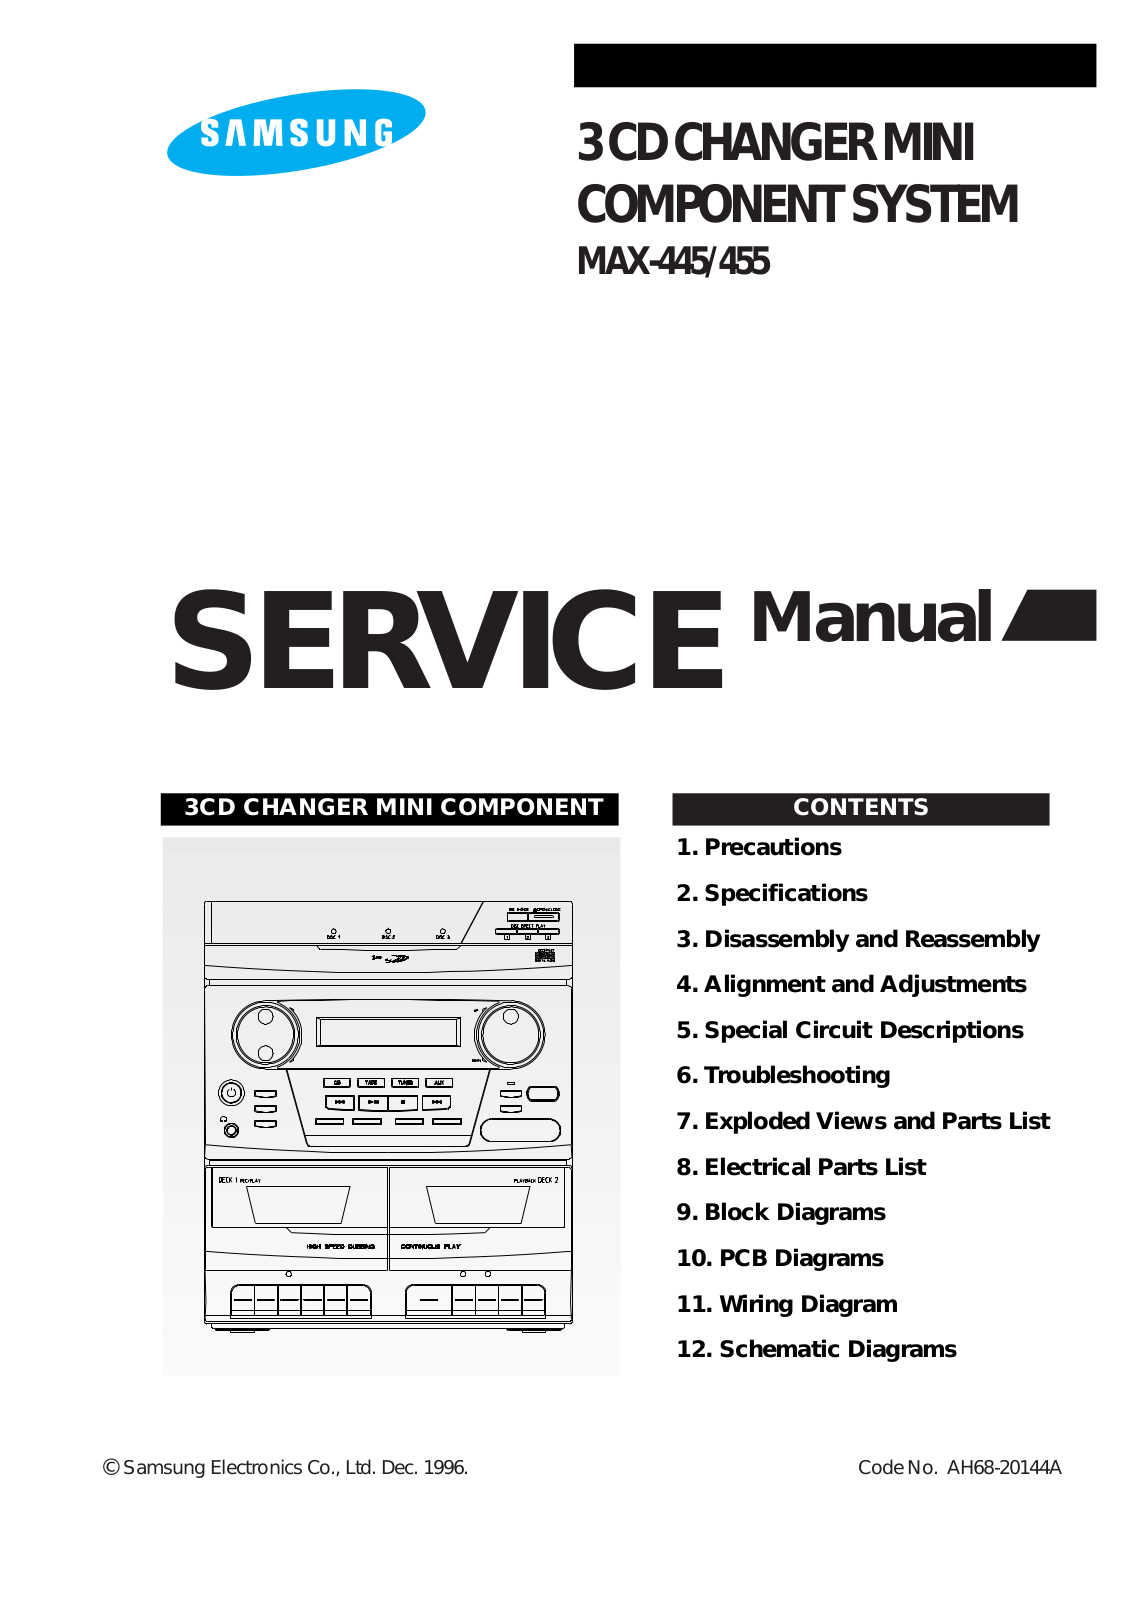 SAMSUNG max455, max445 Service Manual